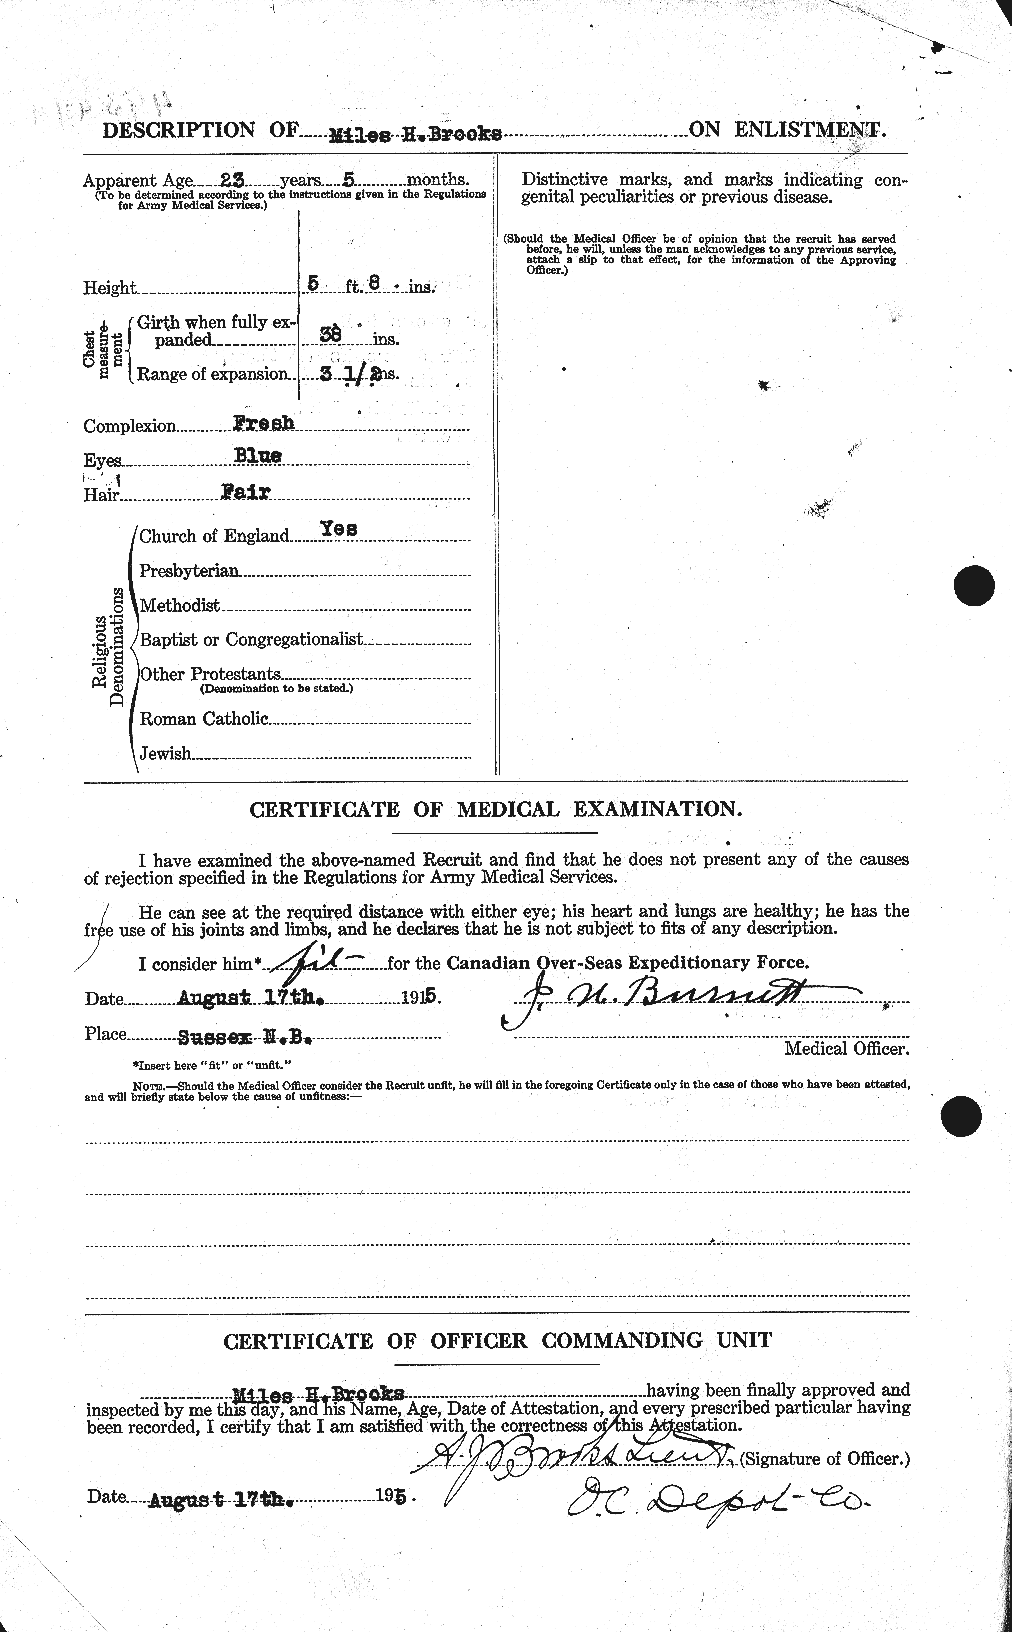 Dossiers du Personnel de la Première Guerre mondiale - CEC 264645b